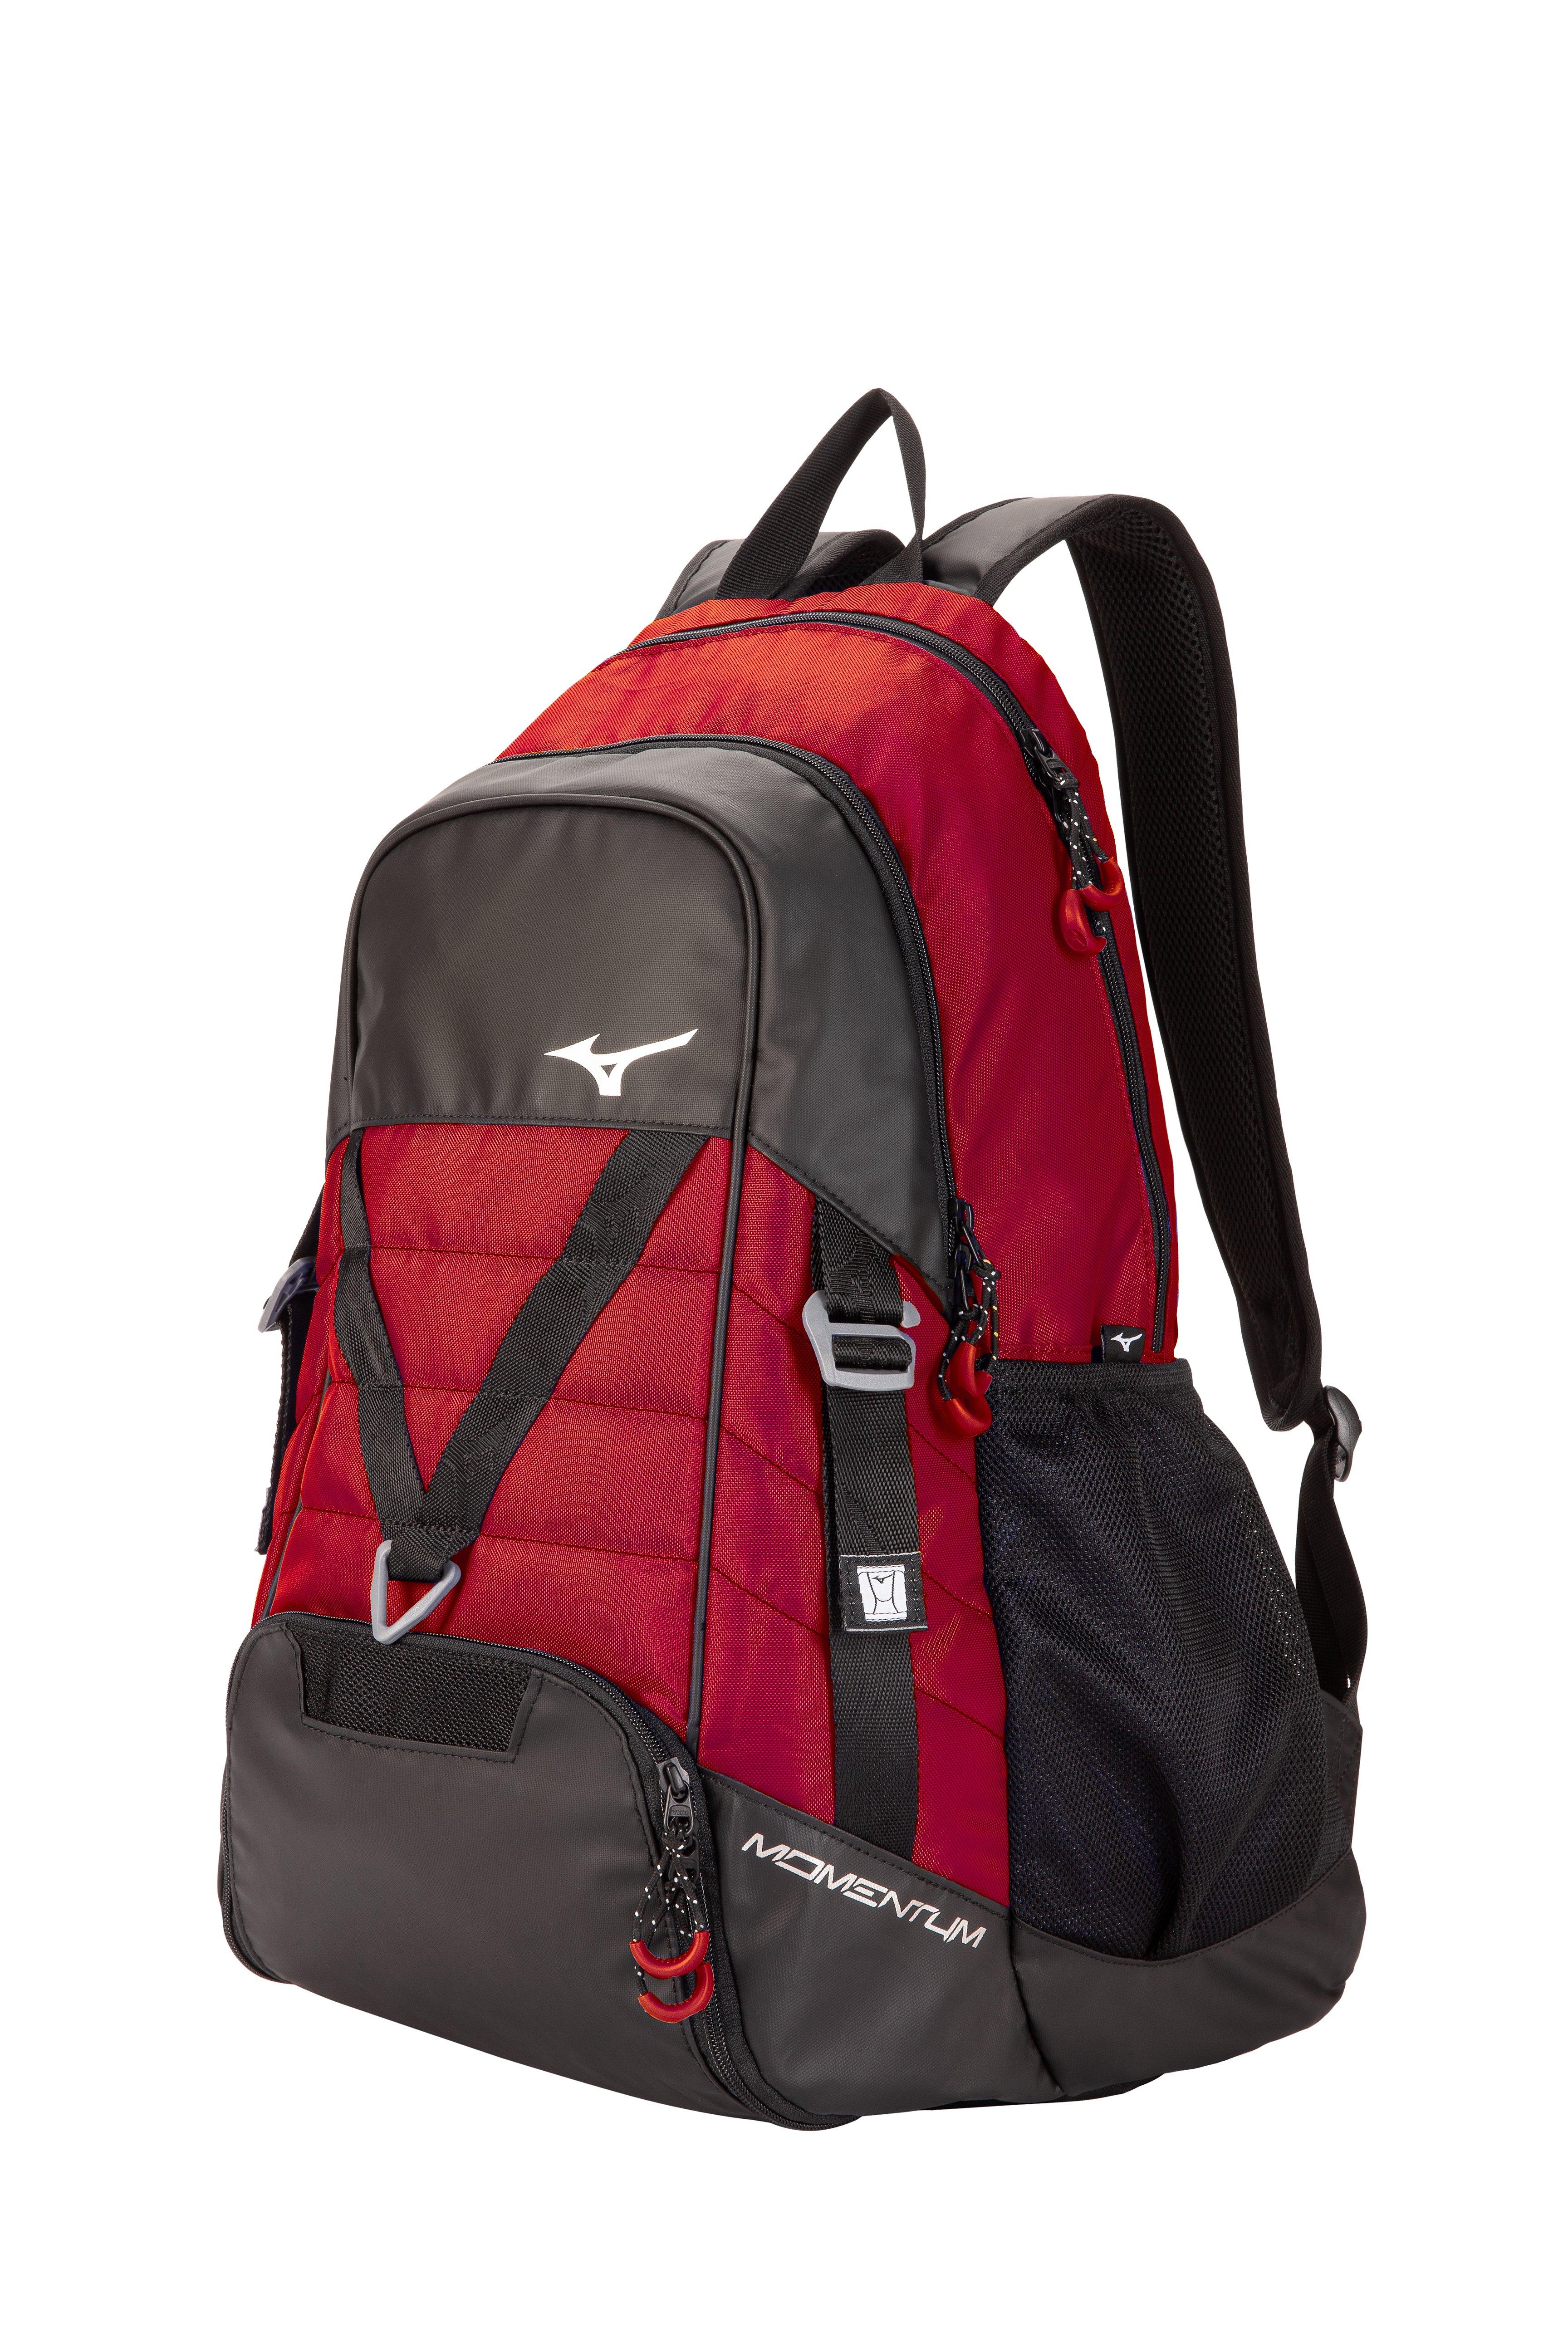 mizuno og5 backpack